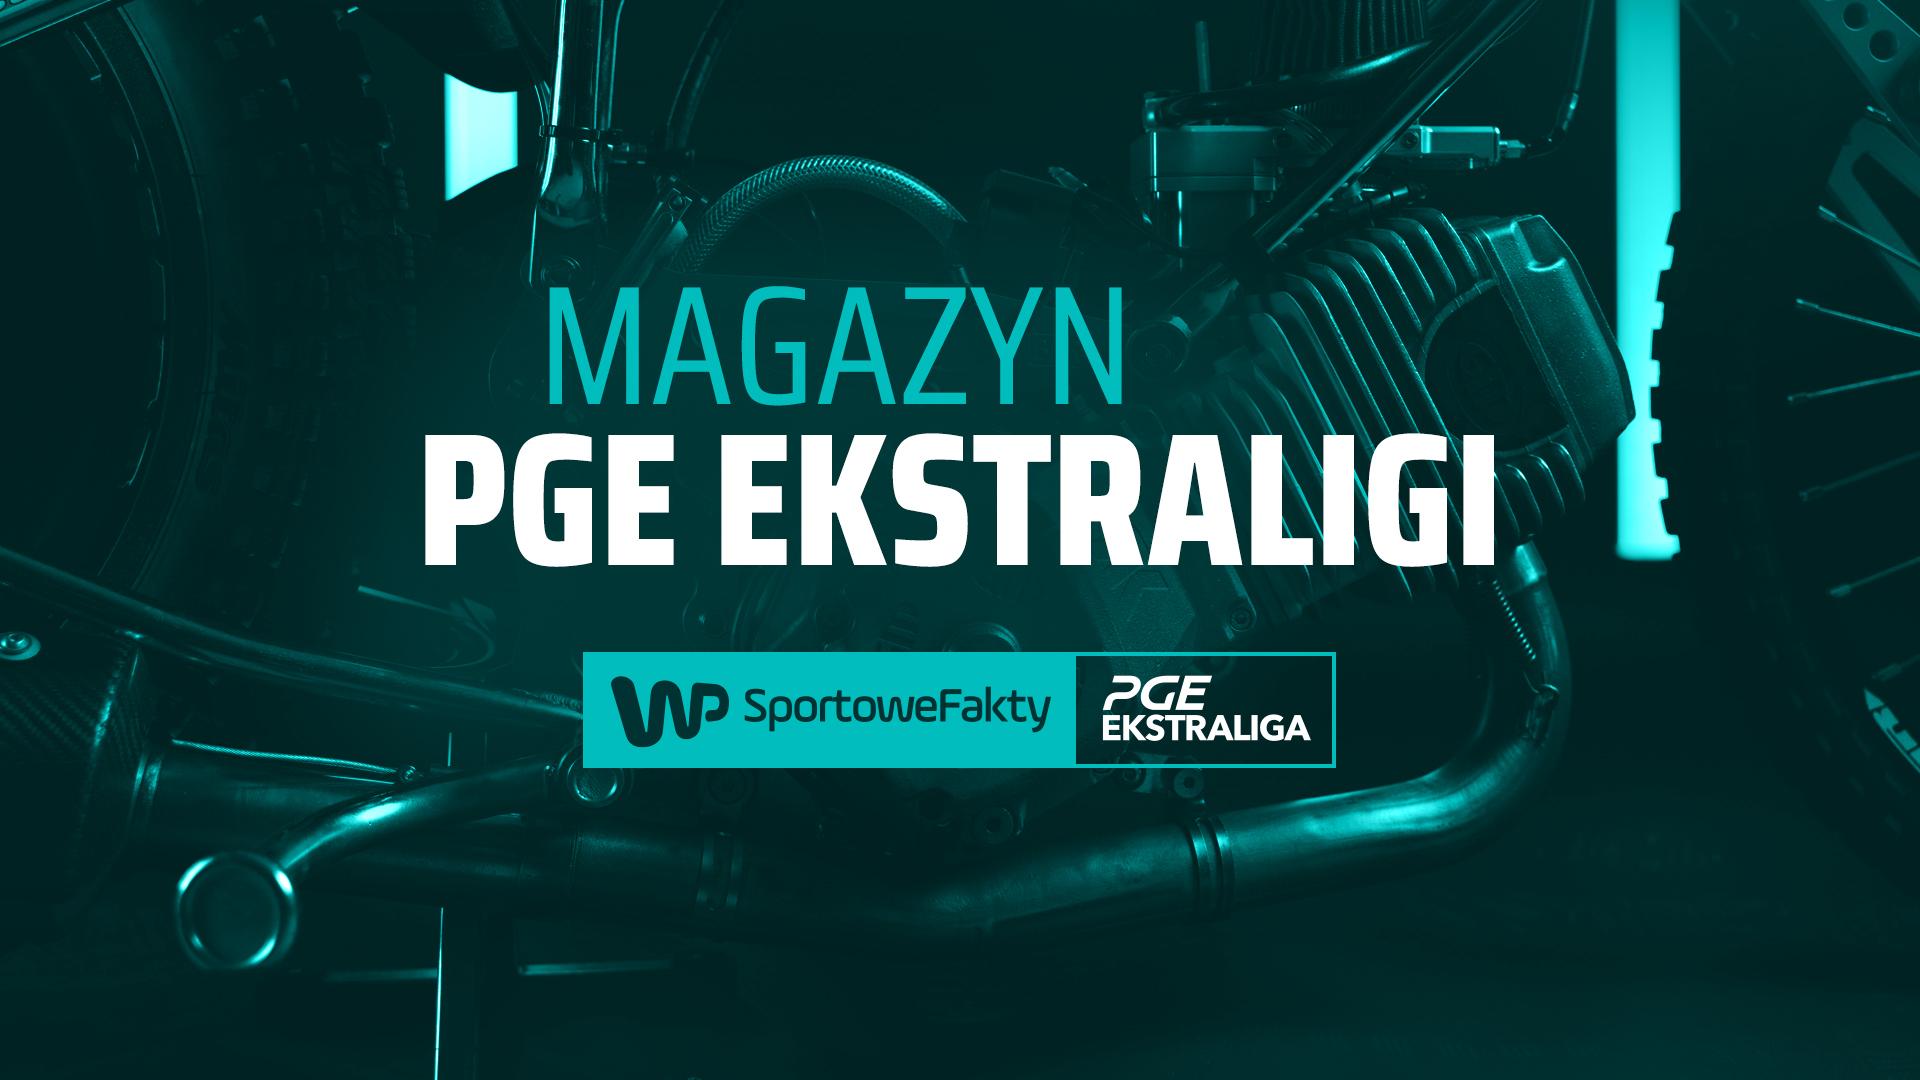 PGE Ekstraliga: Marcin Murawski i Stanisław Chomski w magazynie WP SportoweFakty (26.08.21, godz. 12:30)